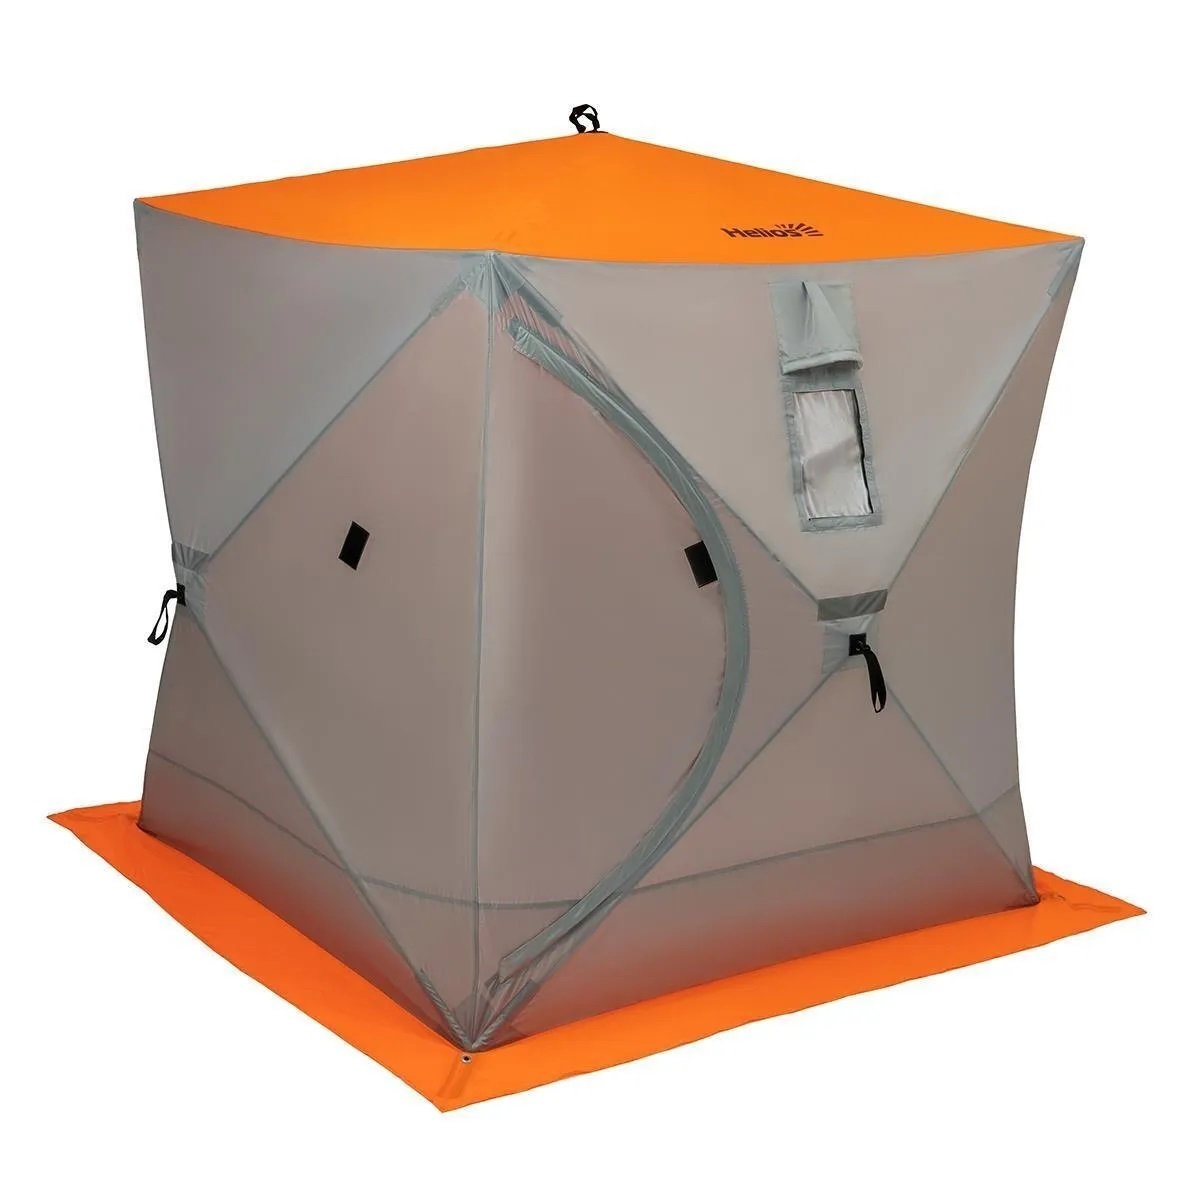 Производитель зимних палаток. Зимняя палатка куб Хелиос 1.8 1.8. Зимняя палатка куб Helios 1.8х1.8. Палатка зимняя куб 1,8х1,8 Orange Lumi/Gray (HS-ISC-180olg) Helios. Палатка зимняя Гелиос куб 1,8.